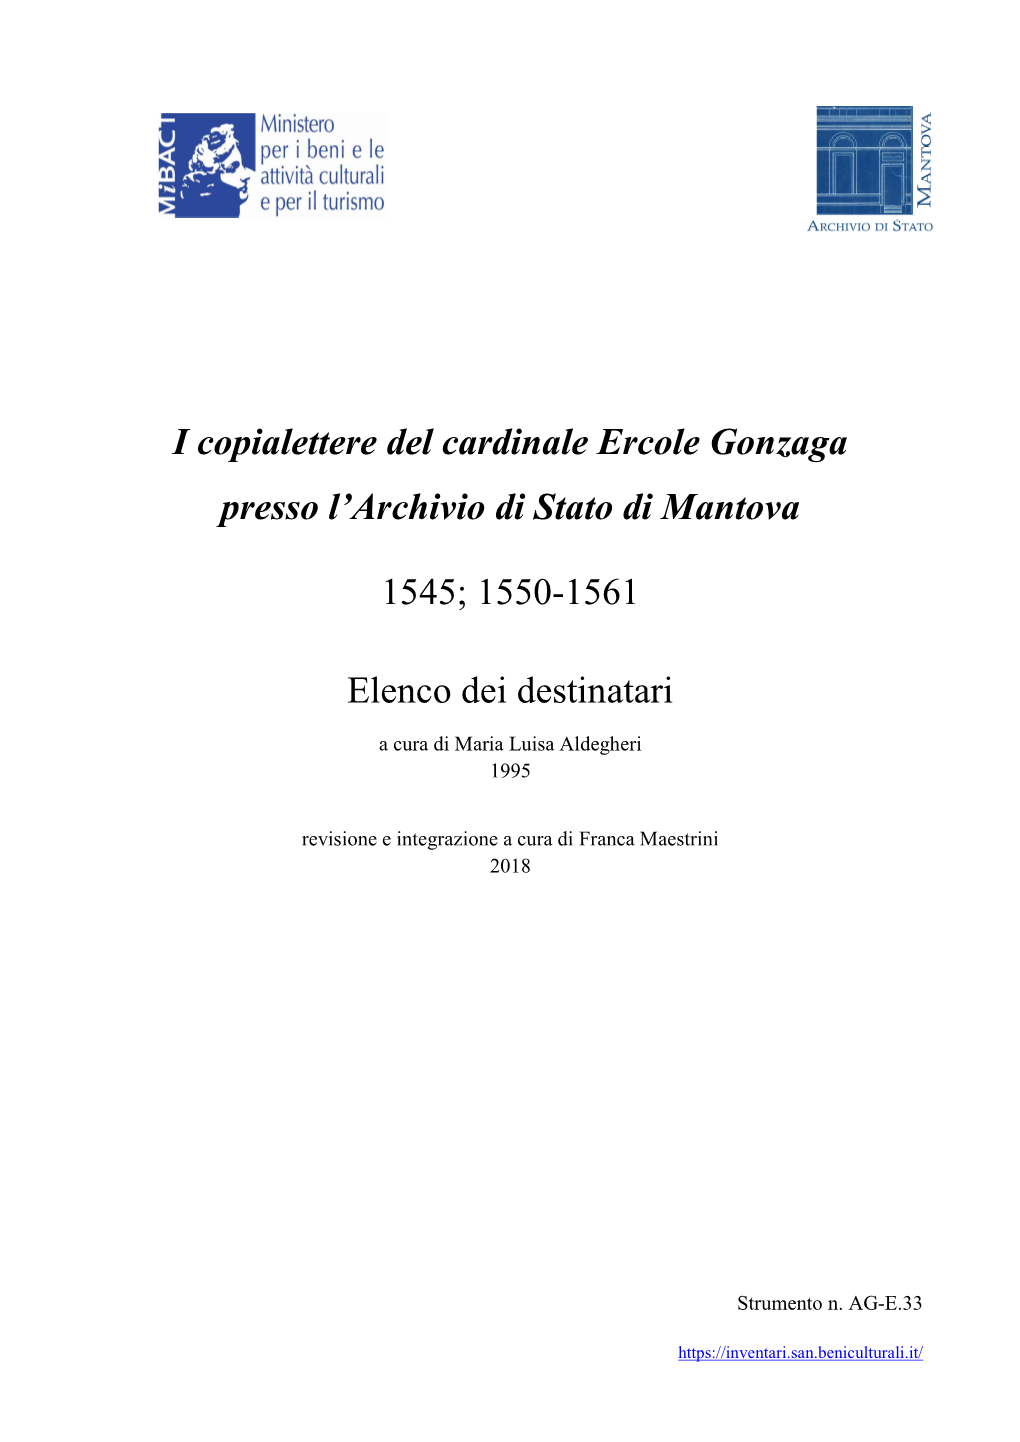 I Copialettere Del Cardinale Ercole Gonzaga Presso L'archivio Di Stato